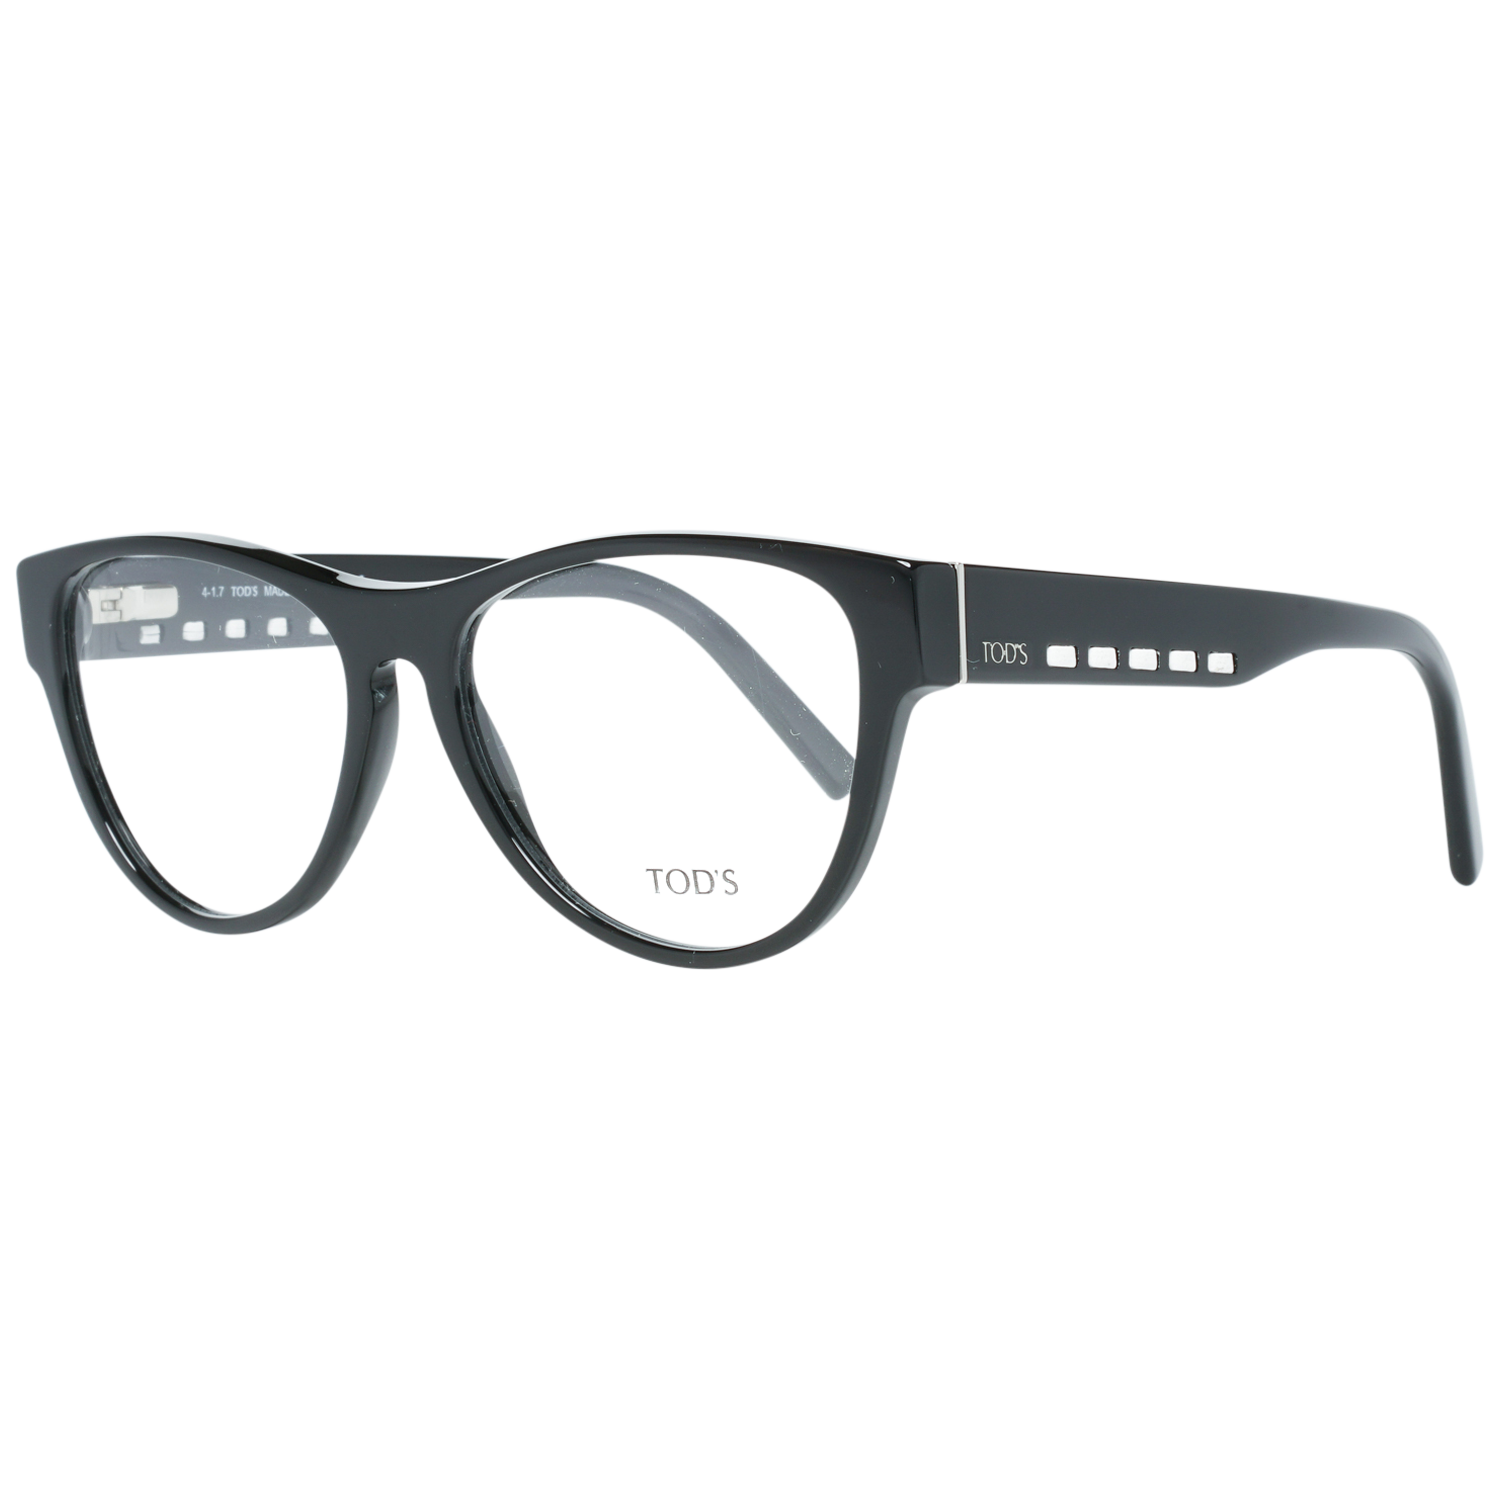 Tods Frames Tods Glasses Women's Black Round Frames TO5180 001 53mm Eyeglasses Eyewear UK USA Australia 